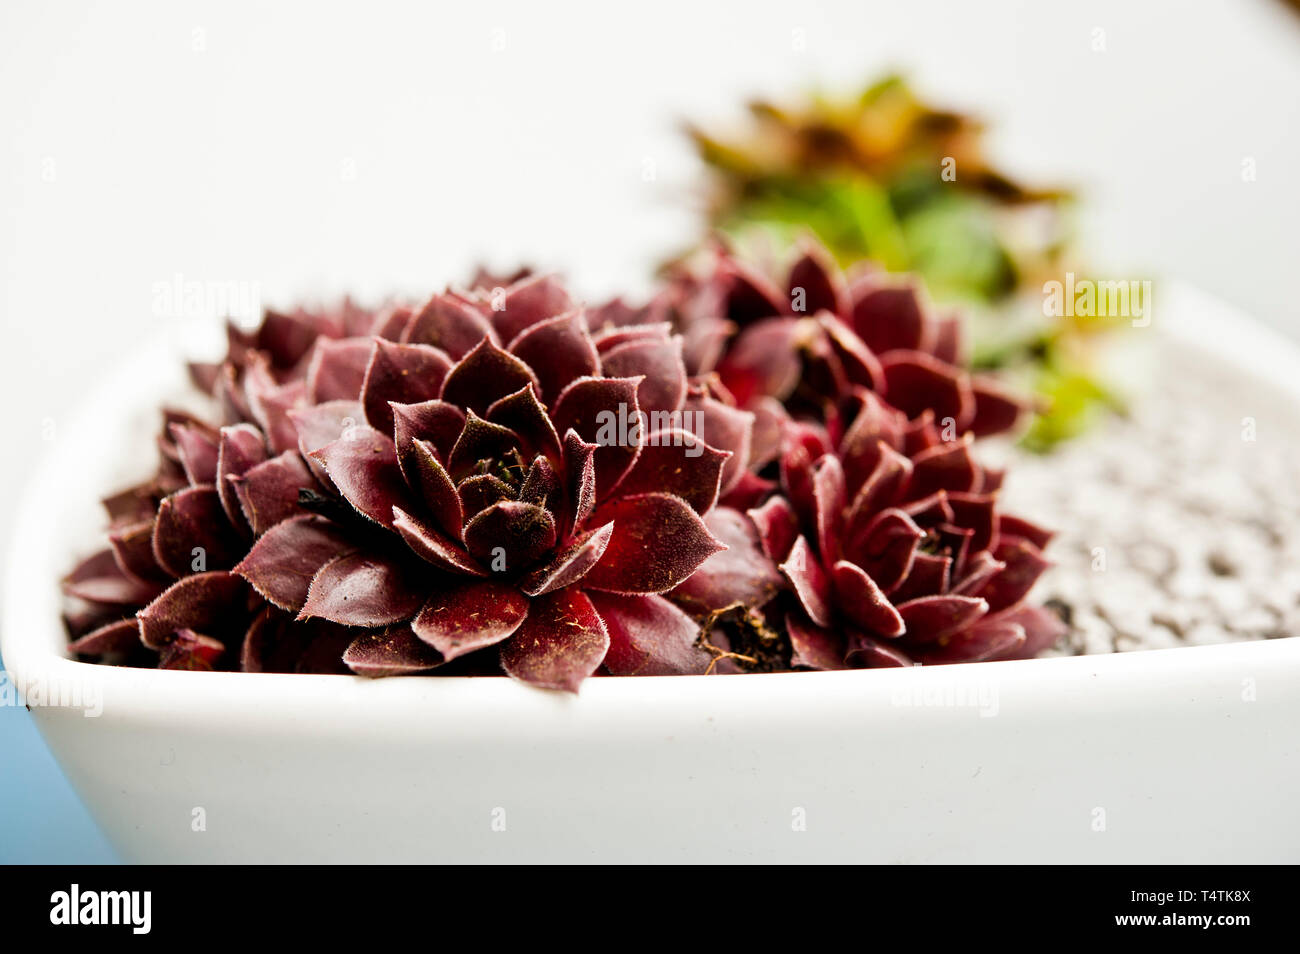 Sempervivum succulent plants in a bowl, close up Stock Photo